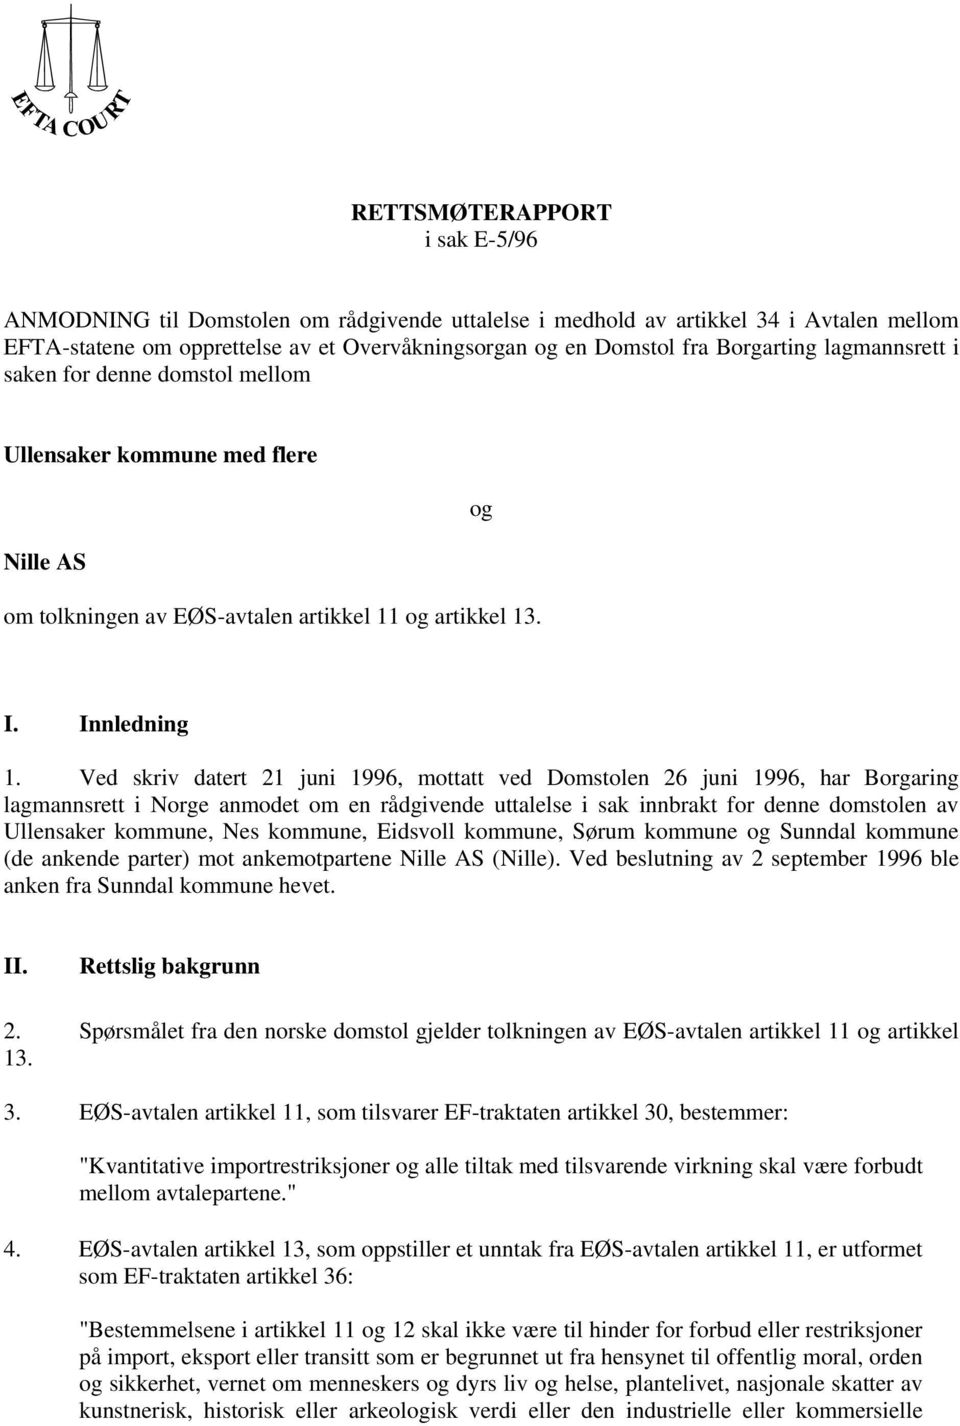 Ved skriv datert 21 juni 1996, mottatt ved Domstolen 26 juni 1996, har Borgaring lagmannsrett i Norge anmodet om en rådgivende uttalelse i sak innbrakt for denne domstolen av Ullensaker kommune, Nes